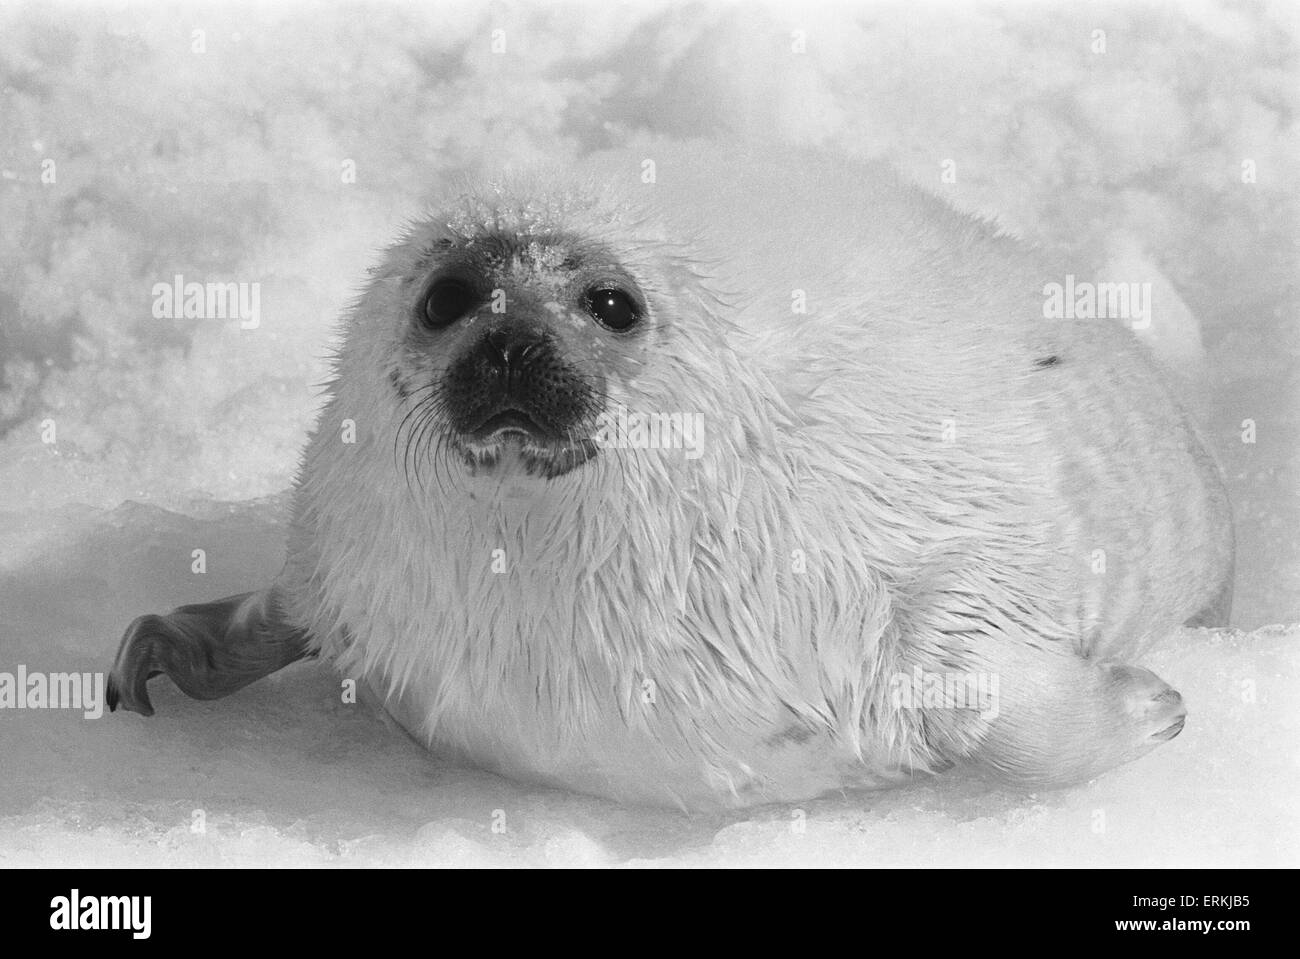 Uccisione di cuccioli di foca per la loro pelliccia. Golfo di St Lawrence. Artico Canadese arcipelago. Marzo 1968. La caccia alle foche in Canada. Foto Stock